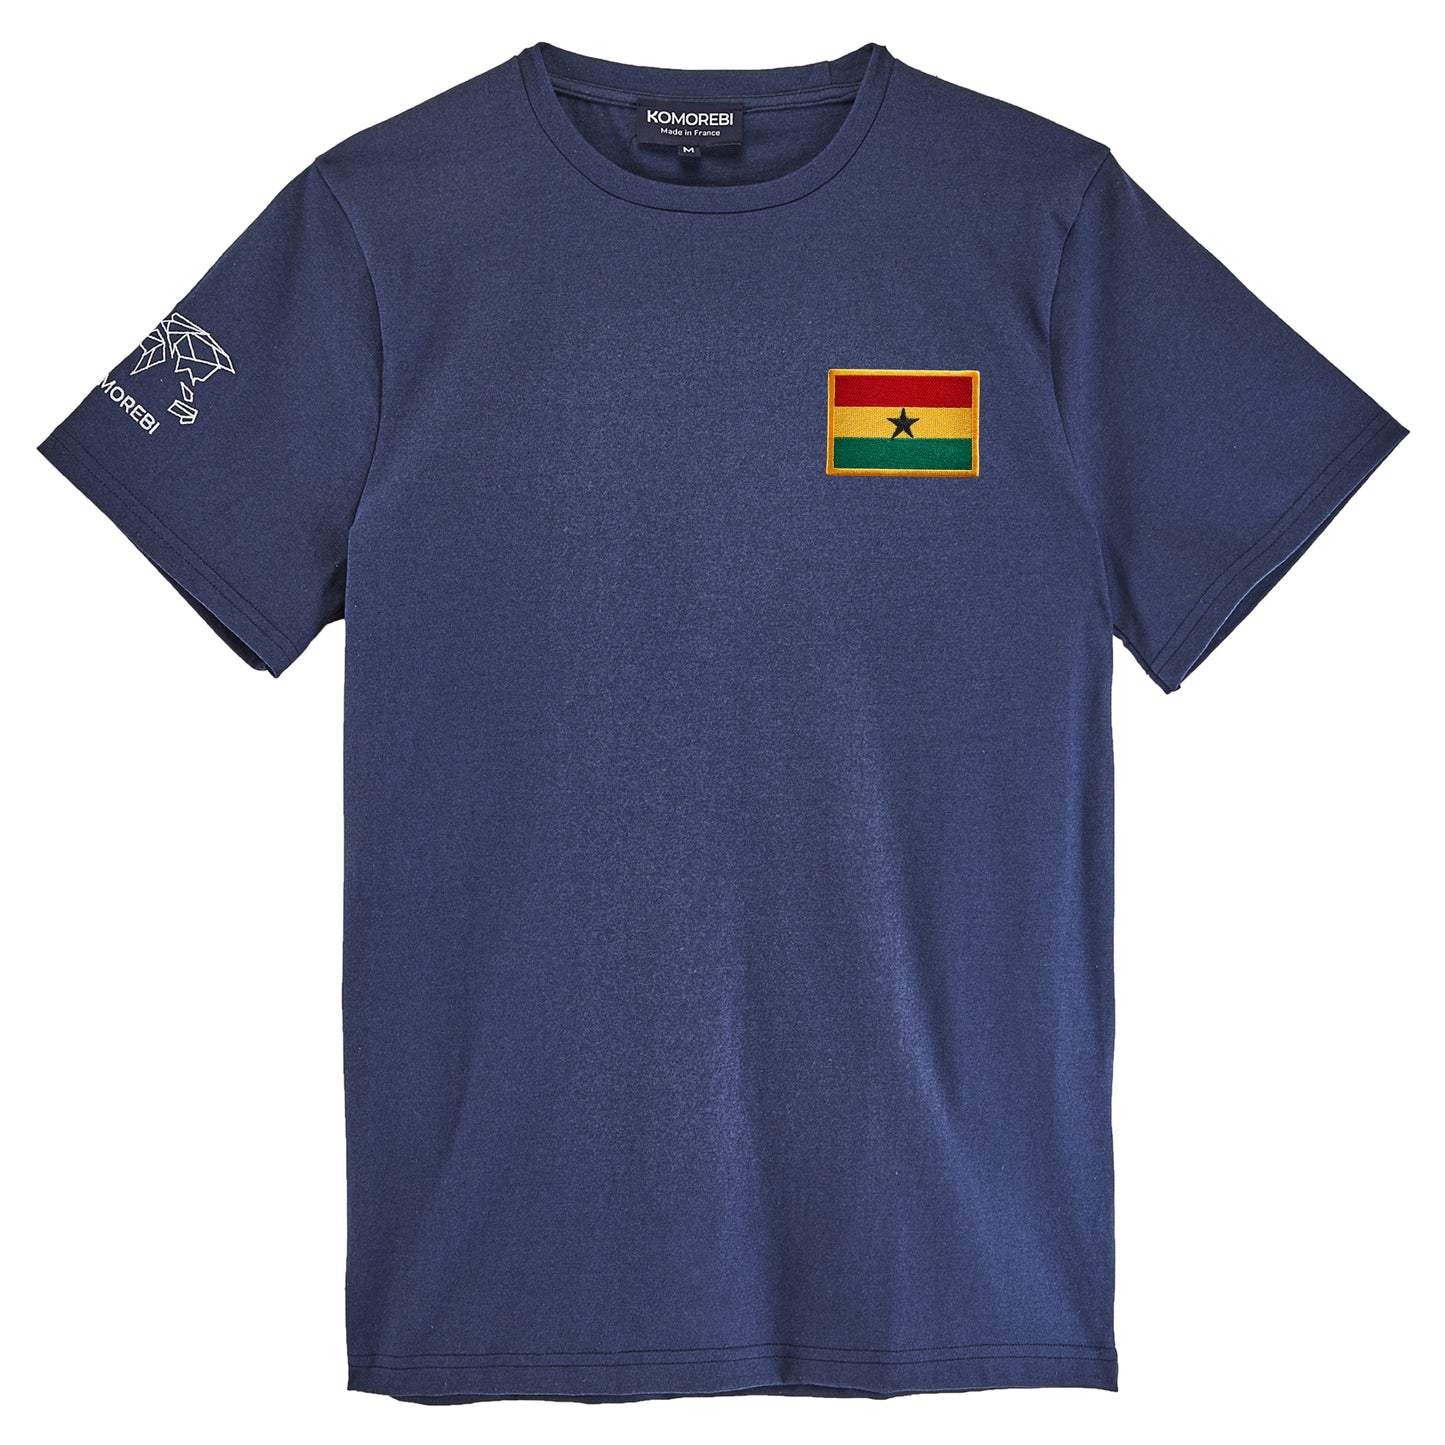 Ghana - flag t-shirt